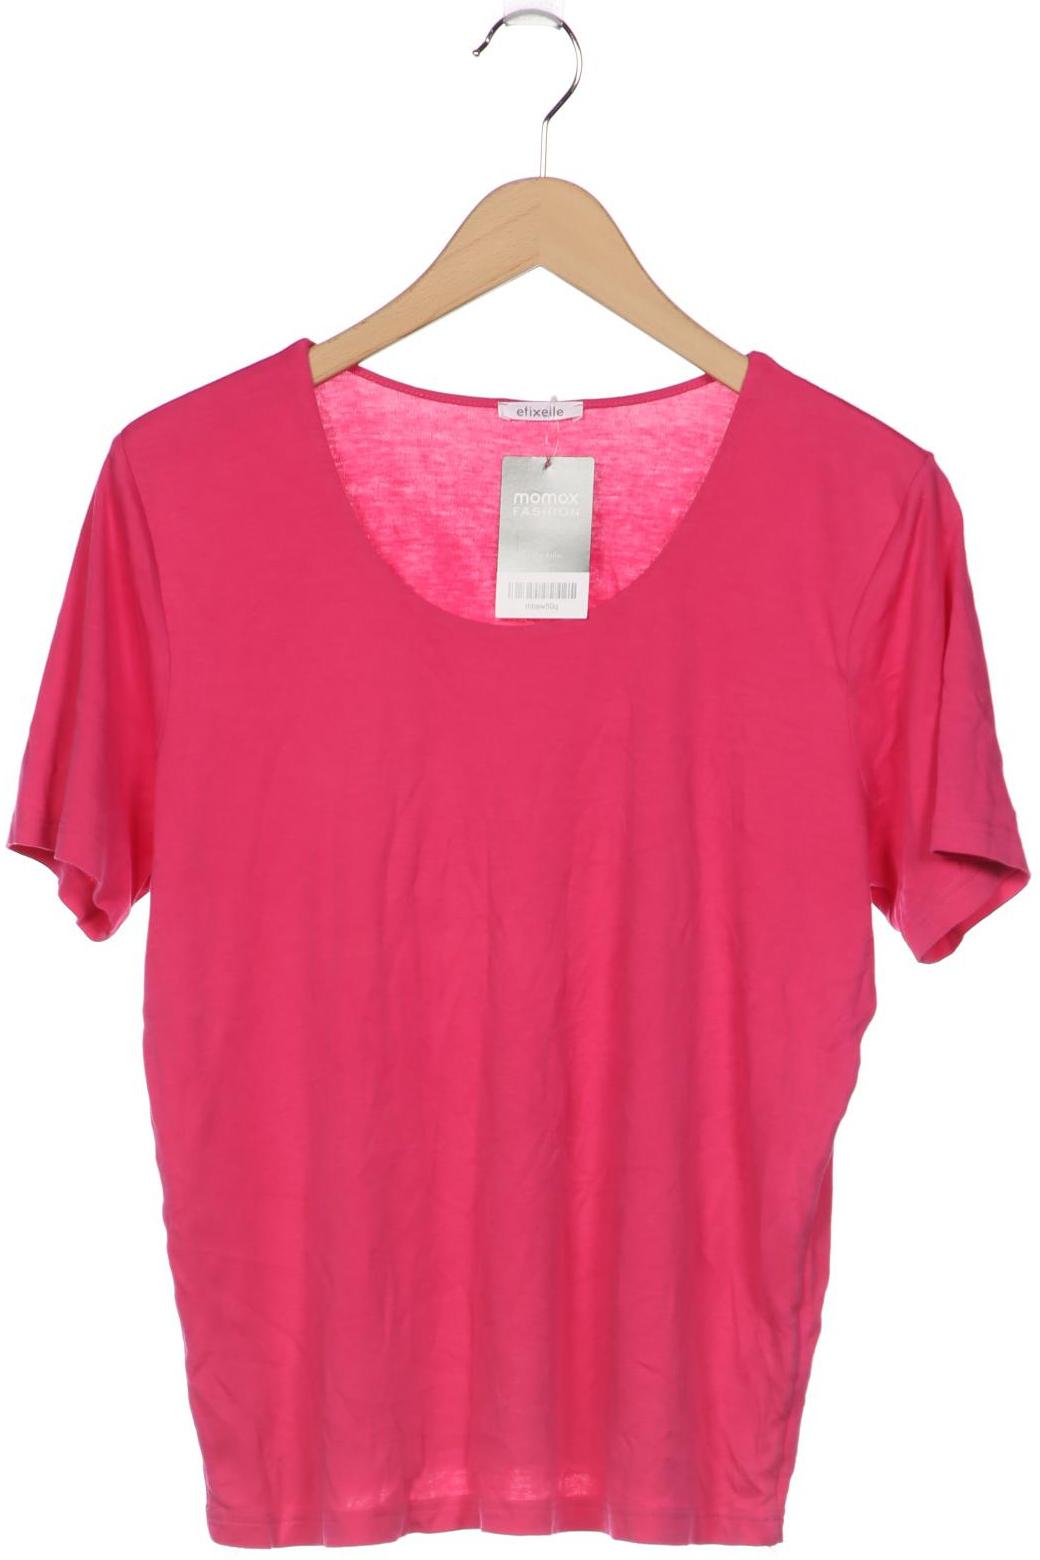 efixelle Damen T-Shirt, pink von efixelle